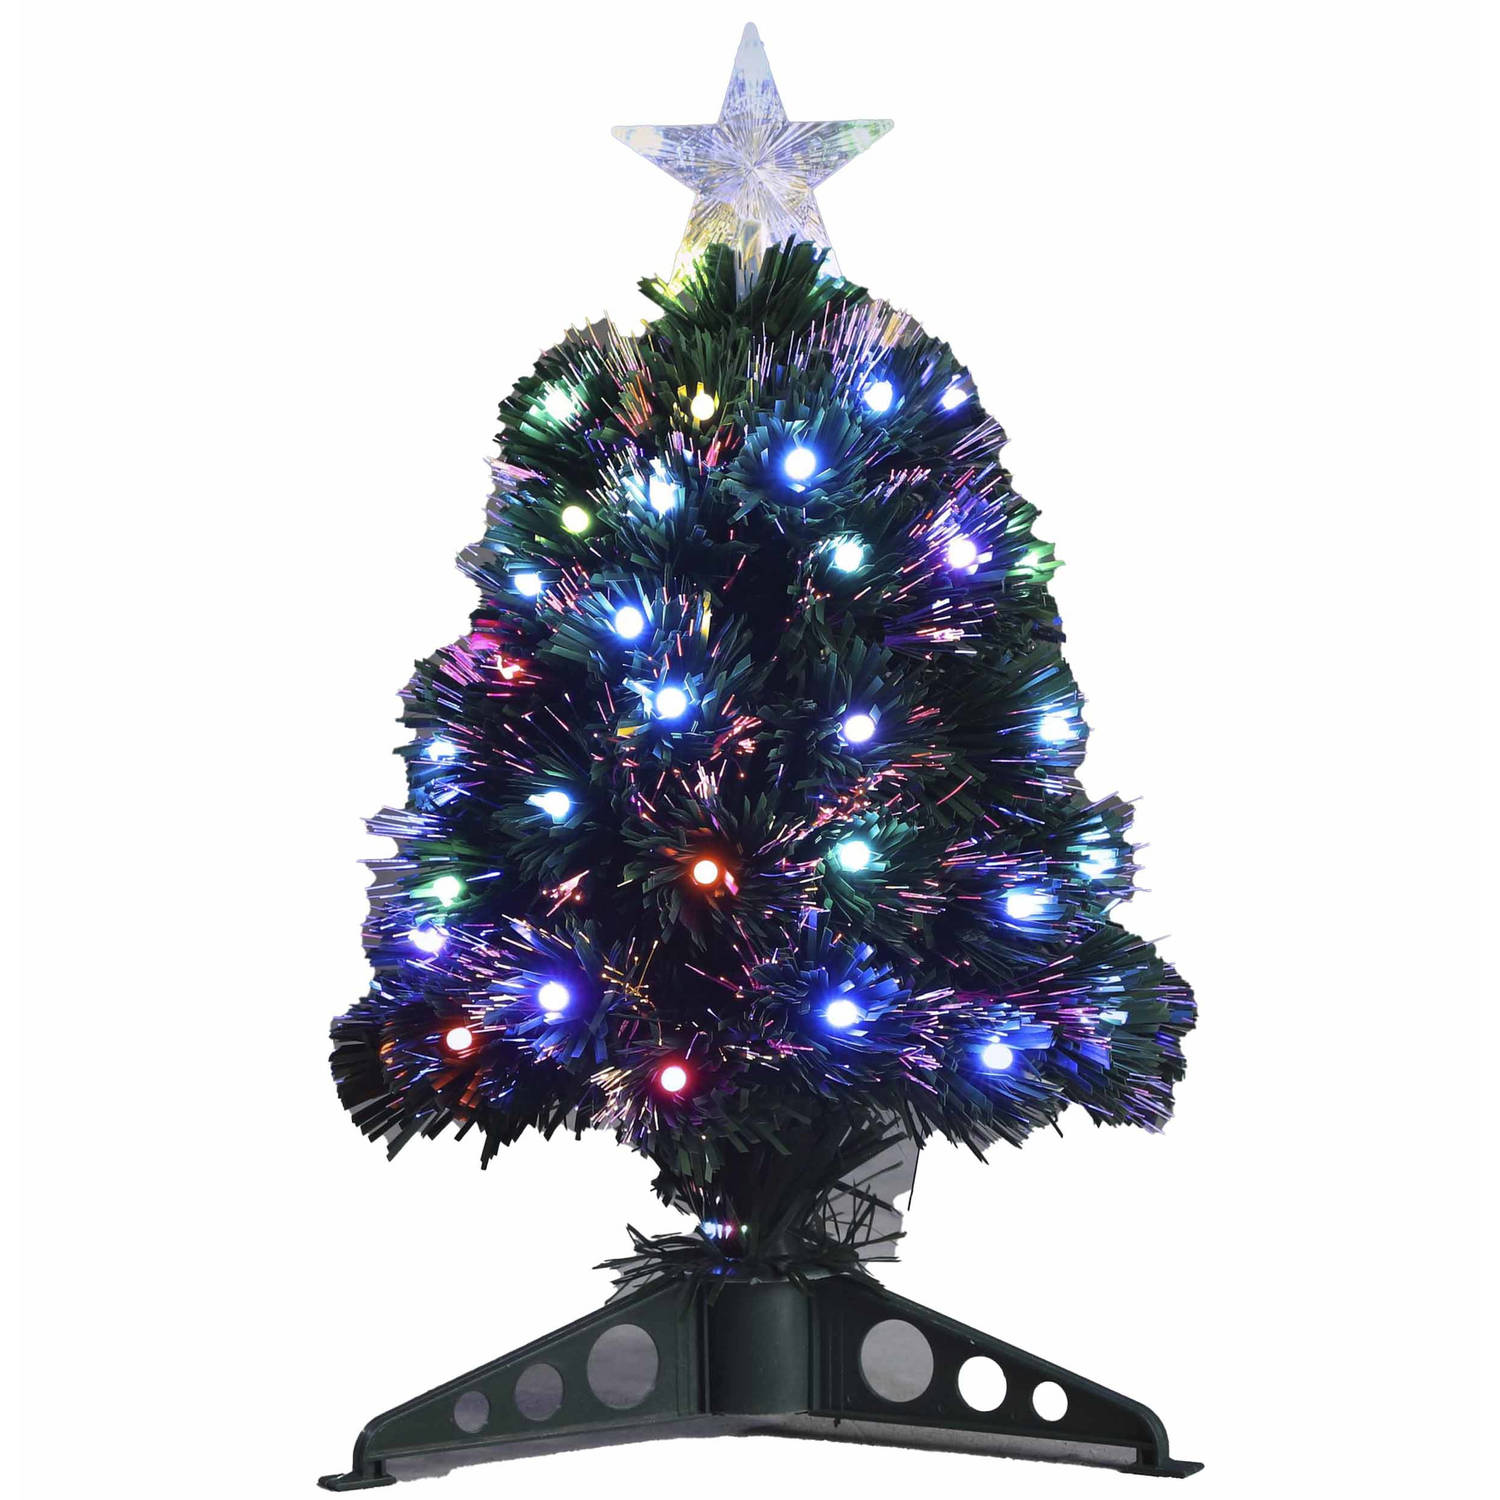 Ontrouw lettergreep Locomotief Fiber optic kerstboom/kunst kerstboom met gekleurde lampjes 45 cm -  Kunstkerstboom | Blokker